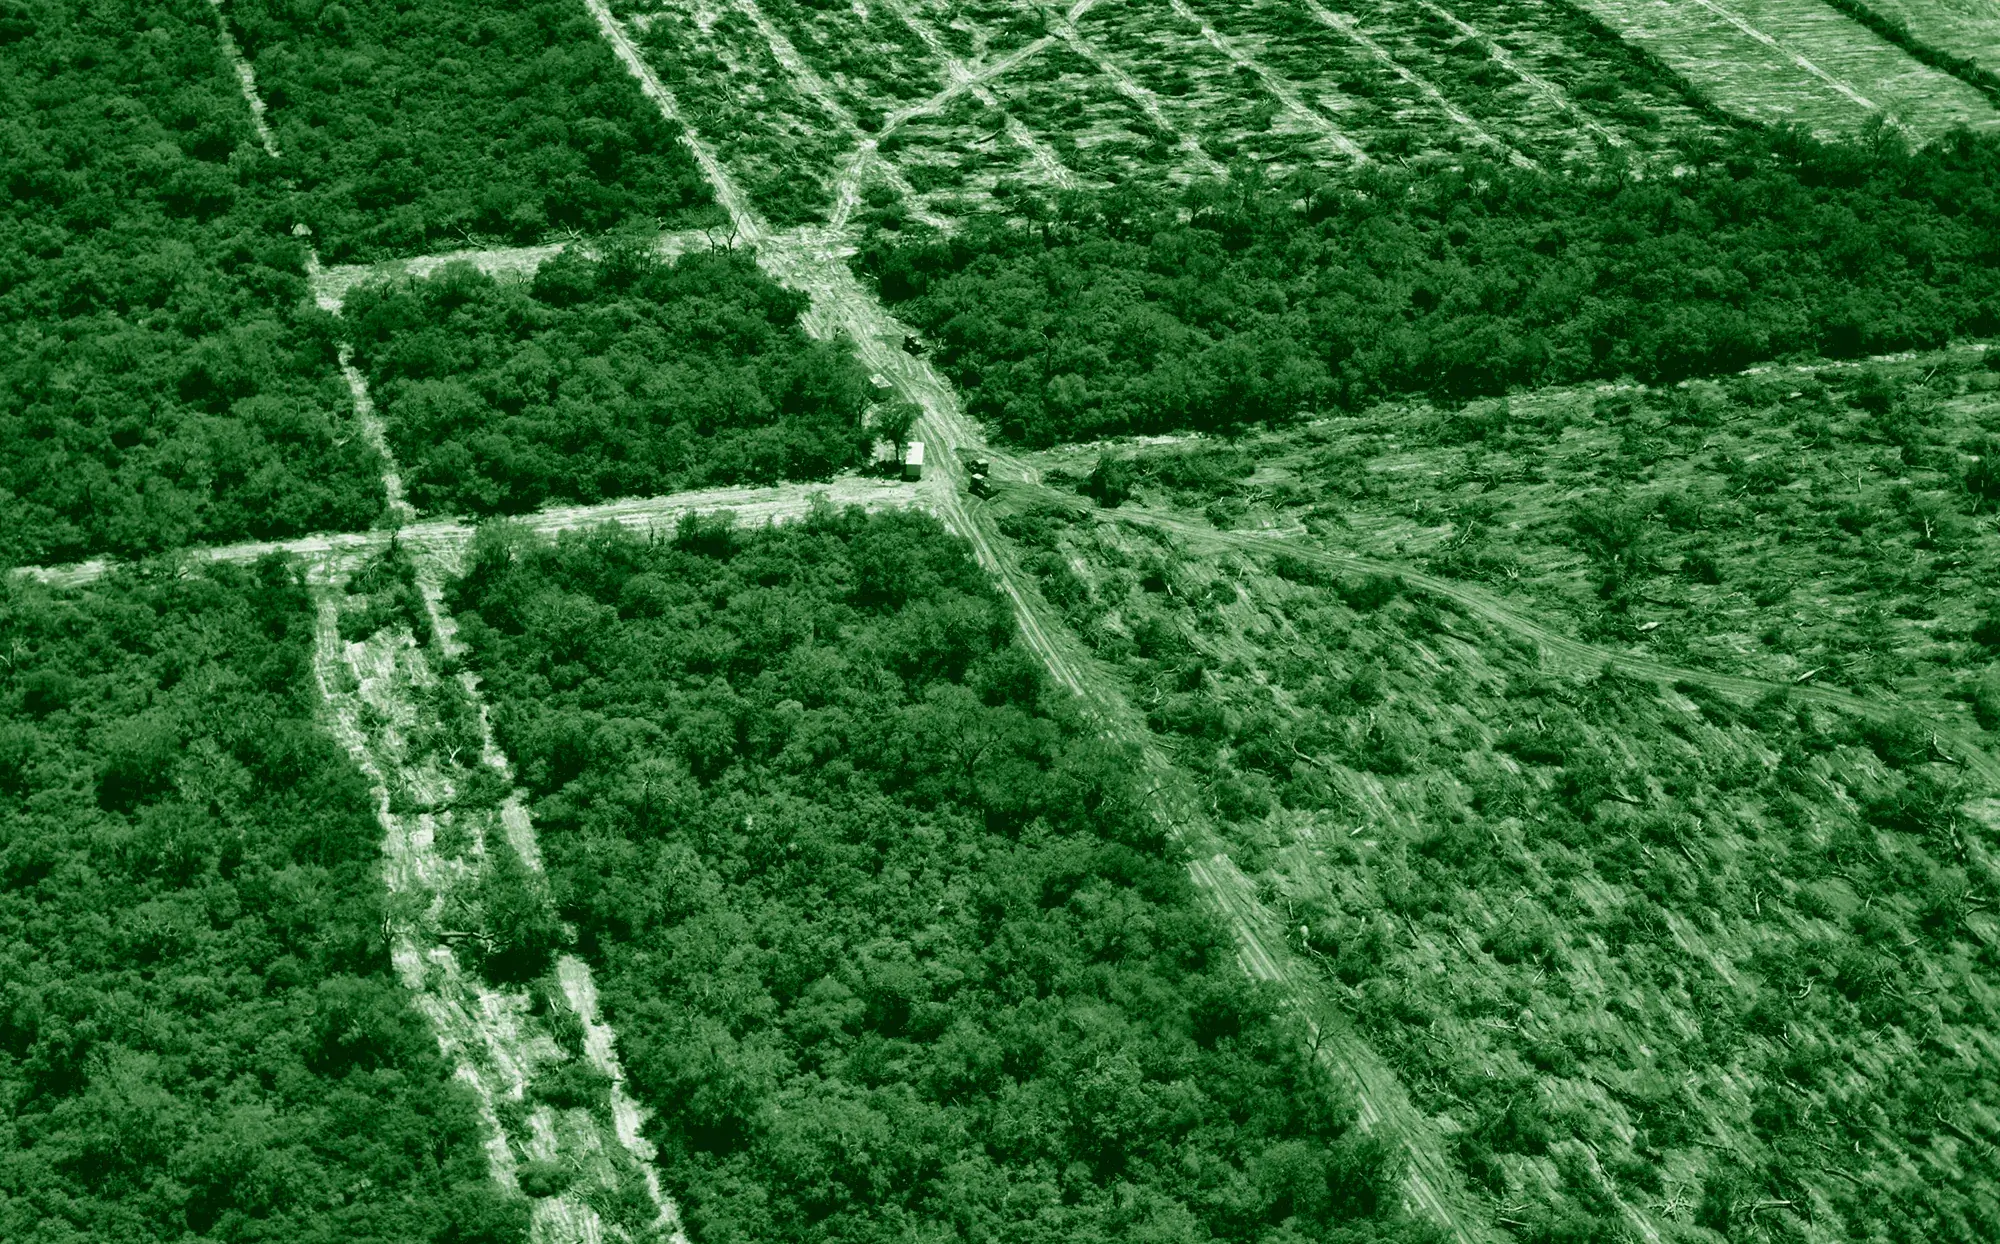 Luftbild teilweise abgeholzter Flächen im Gran Chaco in Paraguay.